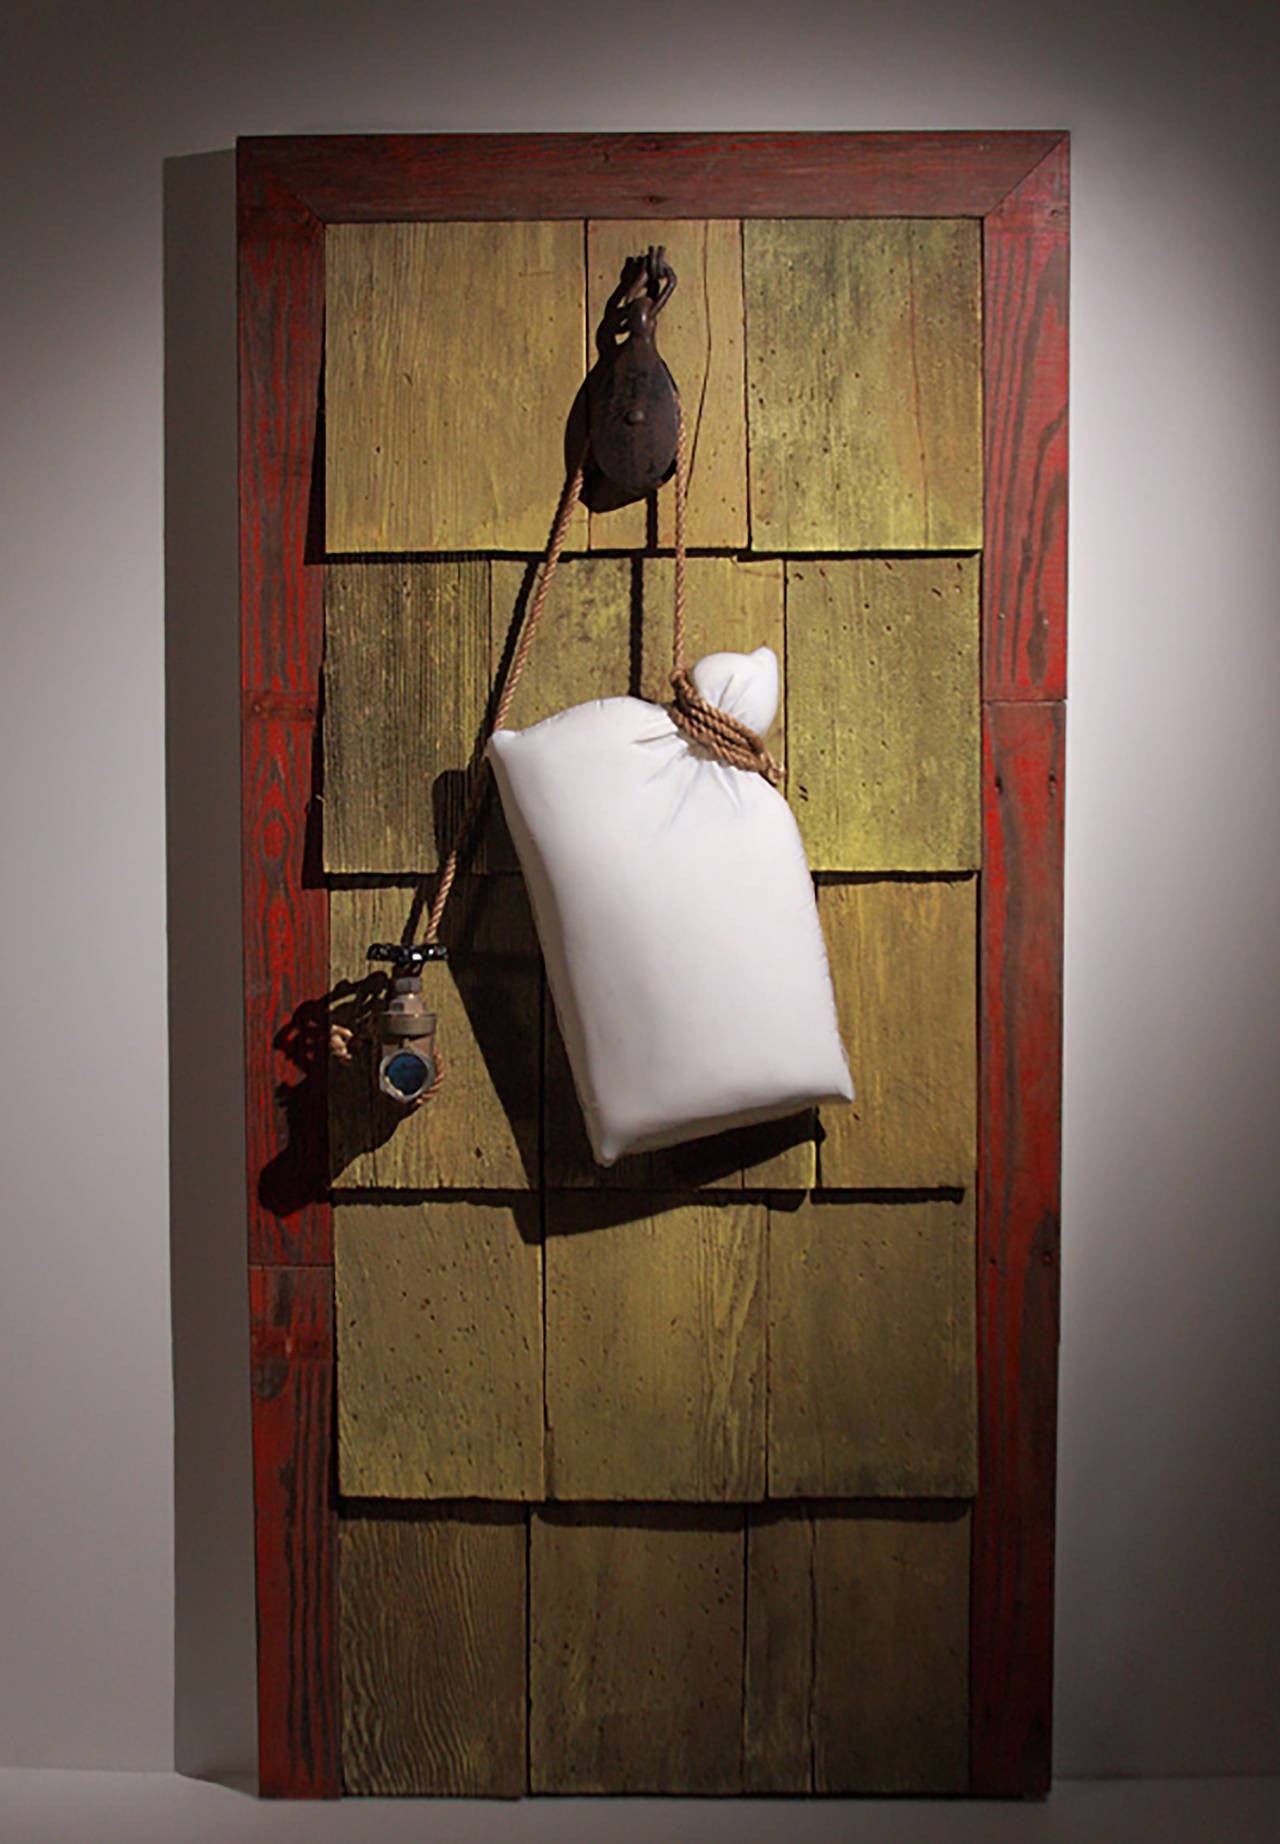 Jeff Ballard Still-Life Sculpture - "THE HOUSE OF FAULTY LOGIC" - surrealist sculpture with hand blown glass pillow